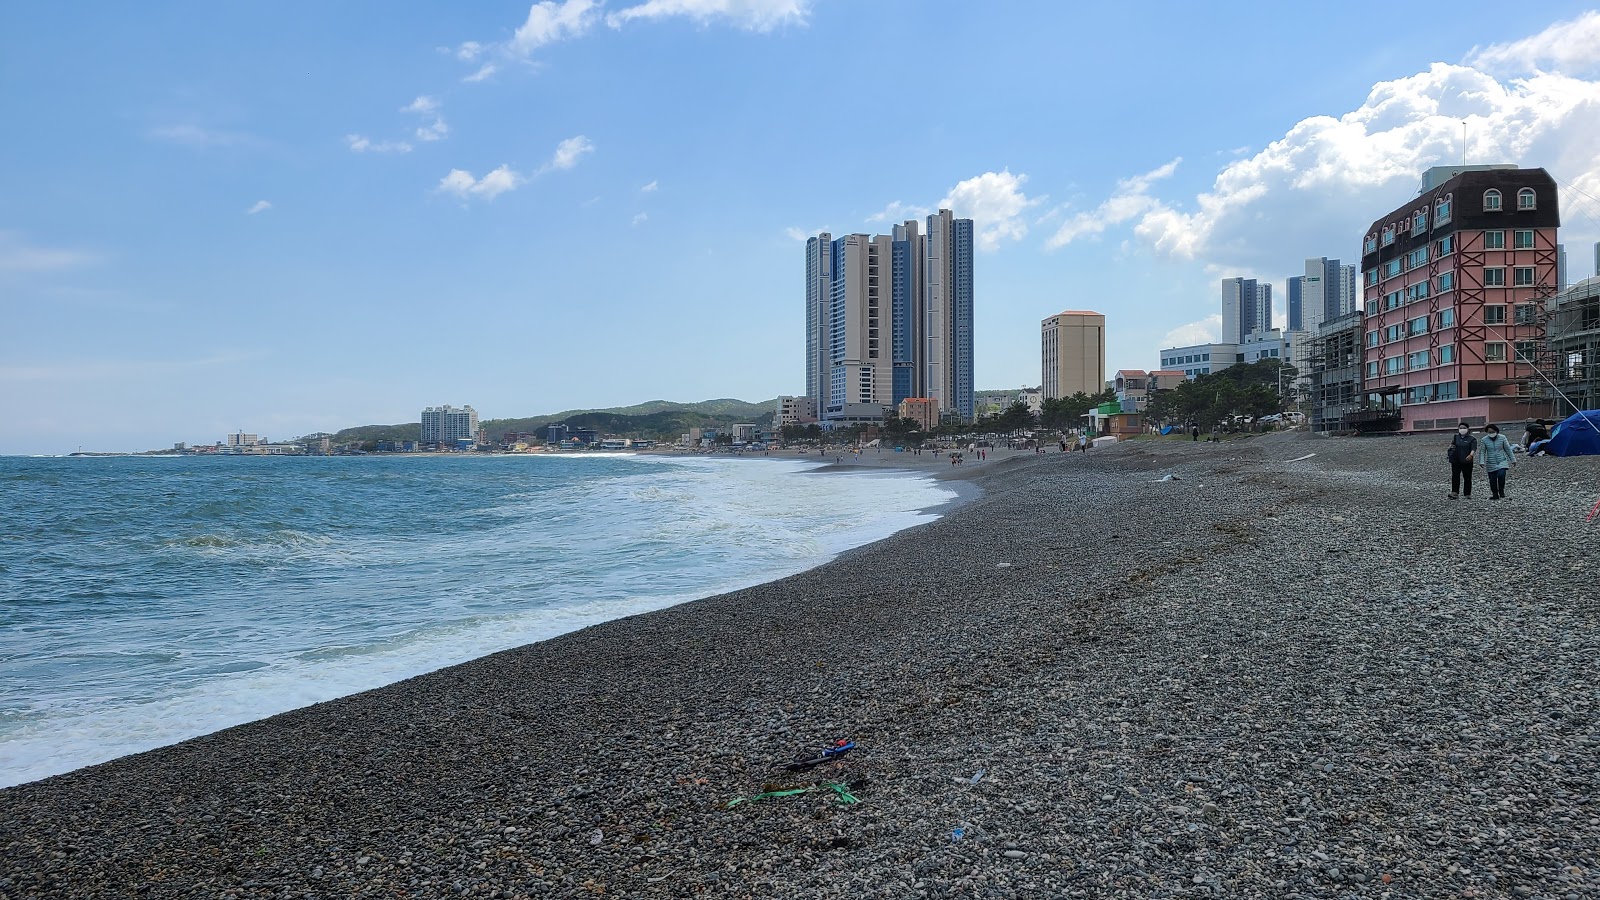 Zdjęcie Jeongja Beach - popularne miejsce wśród znawców relaksu